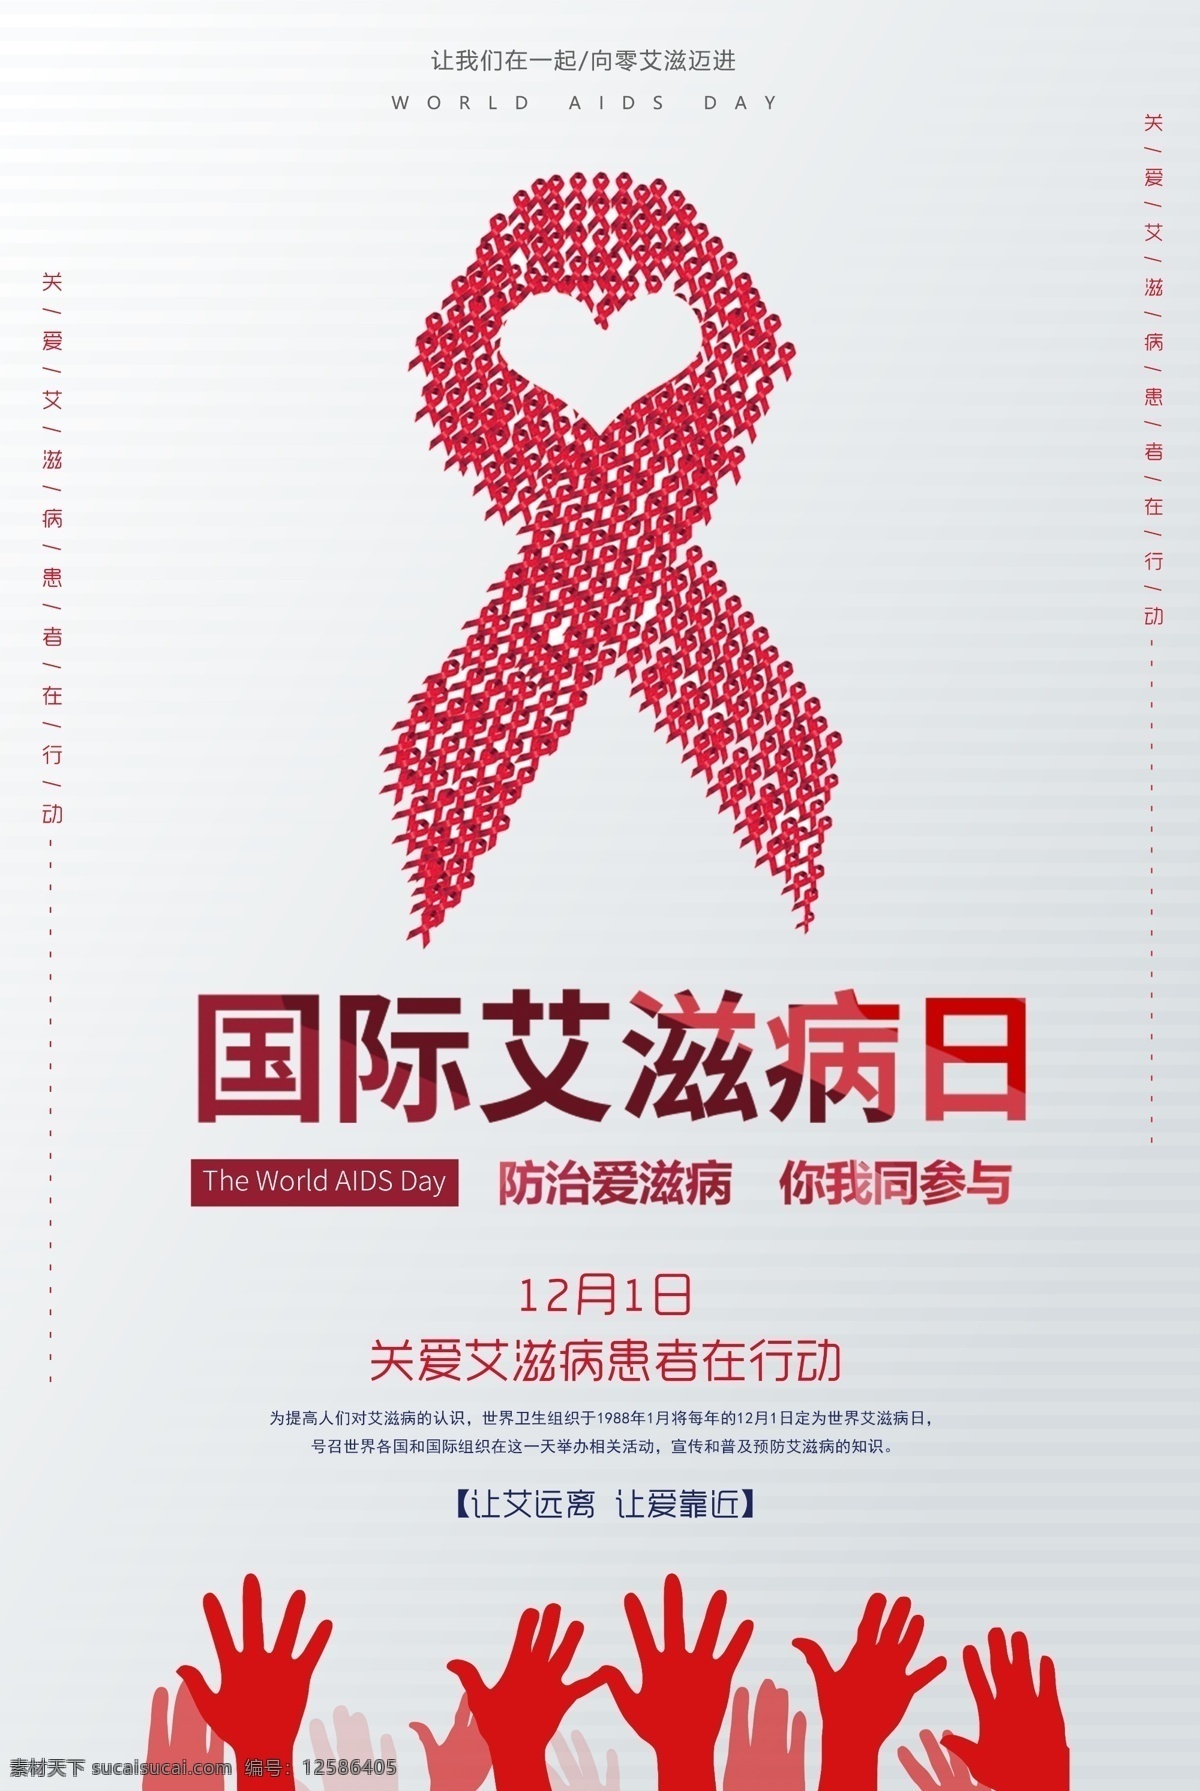 国际 艾滋病 日 海报 国际艾滋病日 预防艾滋 艾滋 珍爱生命 爱心 红丝带 aids 两性健康 海报展板展架